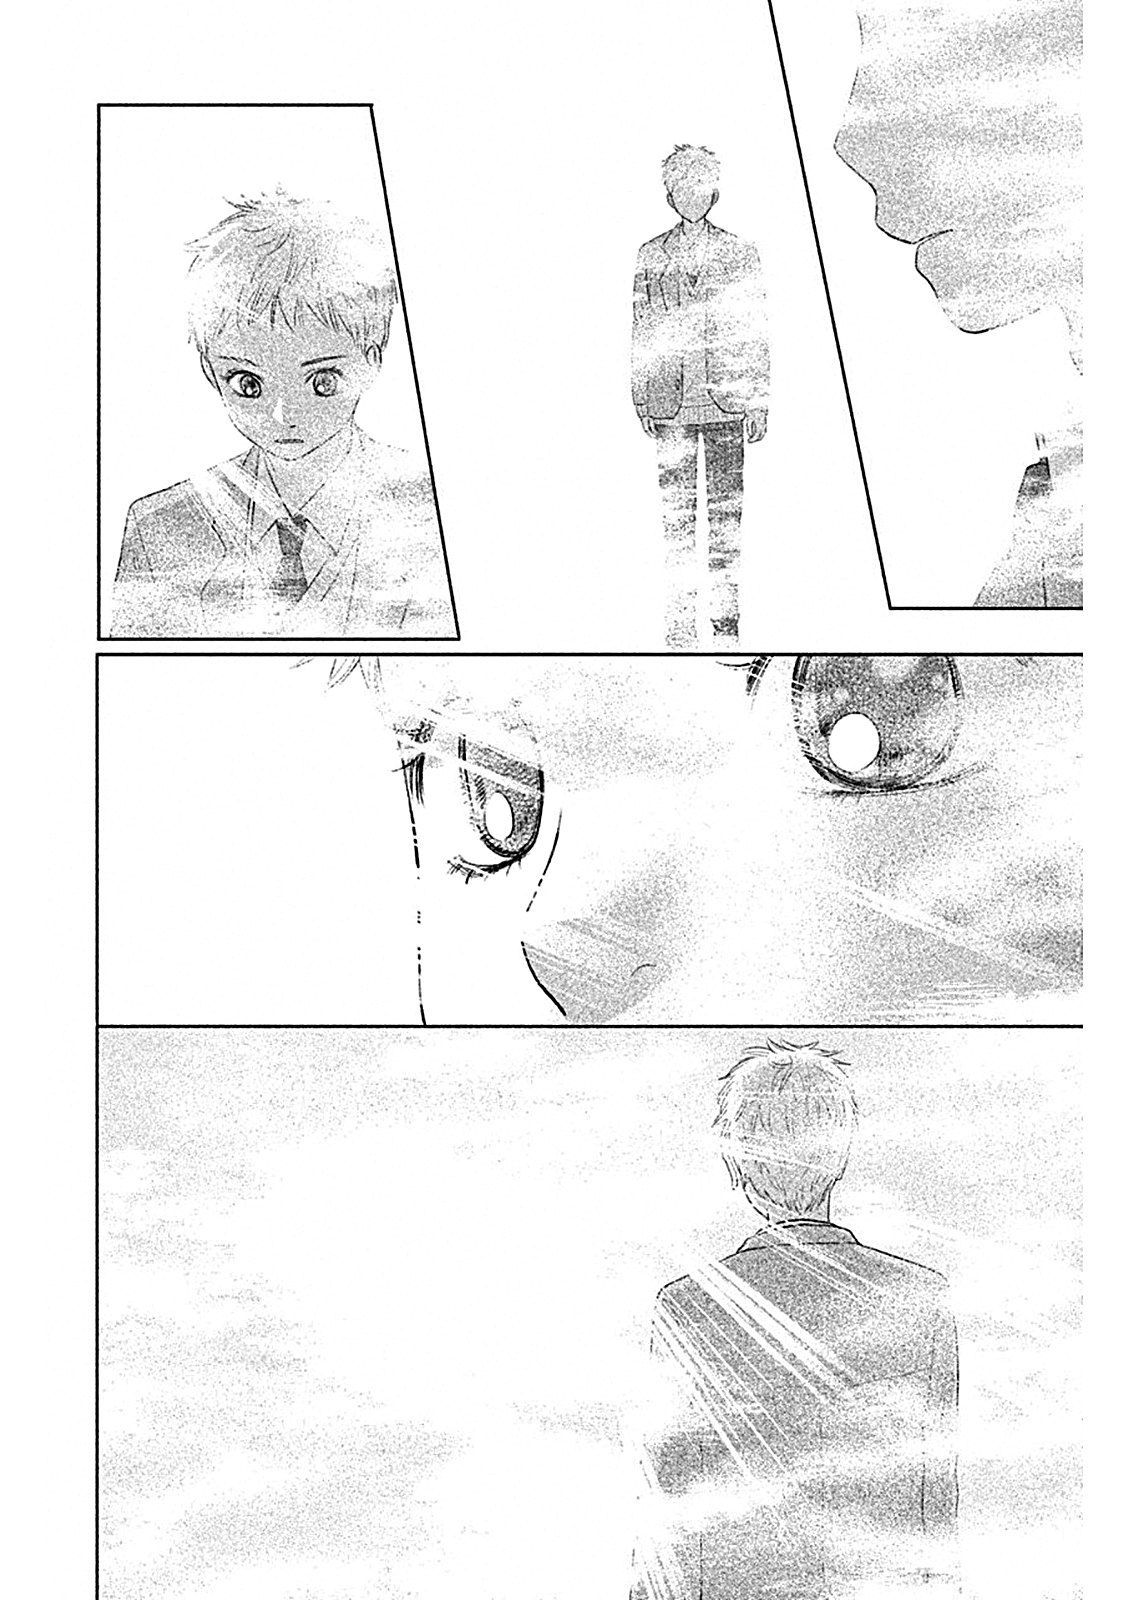 Chihayafuru: Middle School Arc Vol. 1 Ch. 5 5th Poem